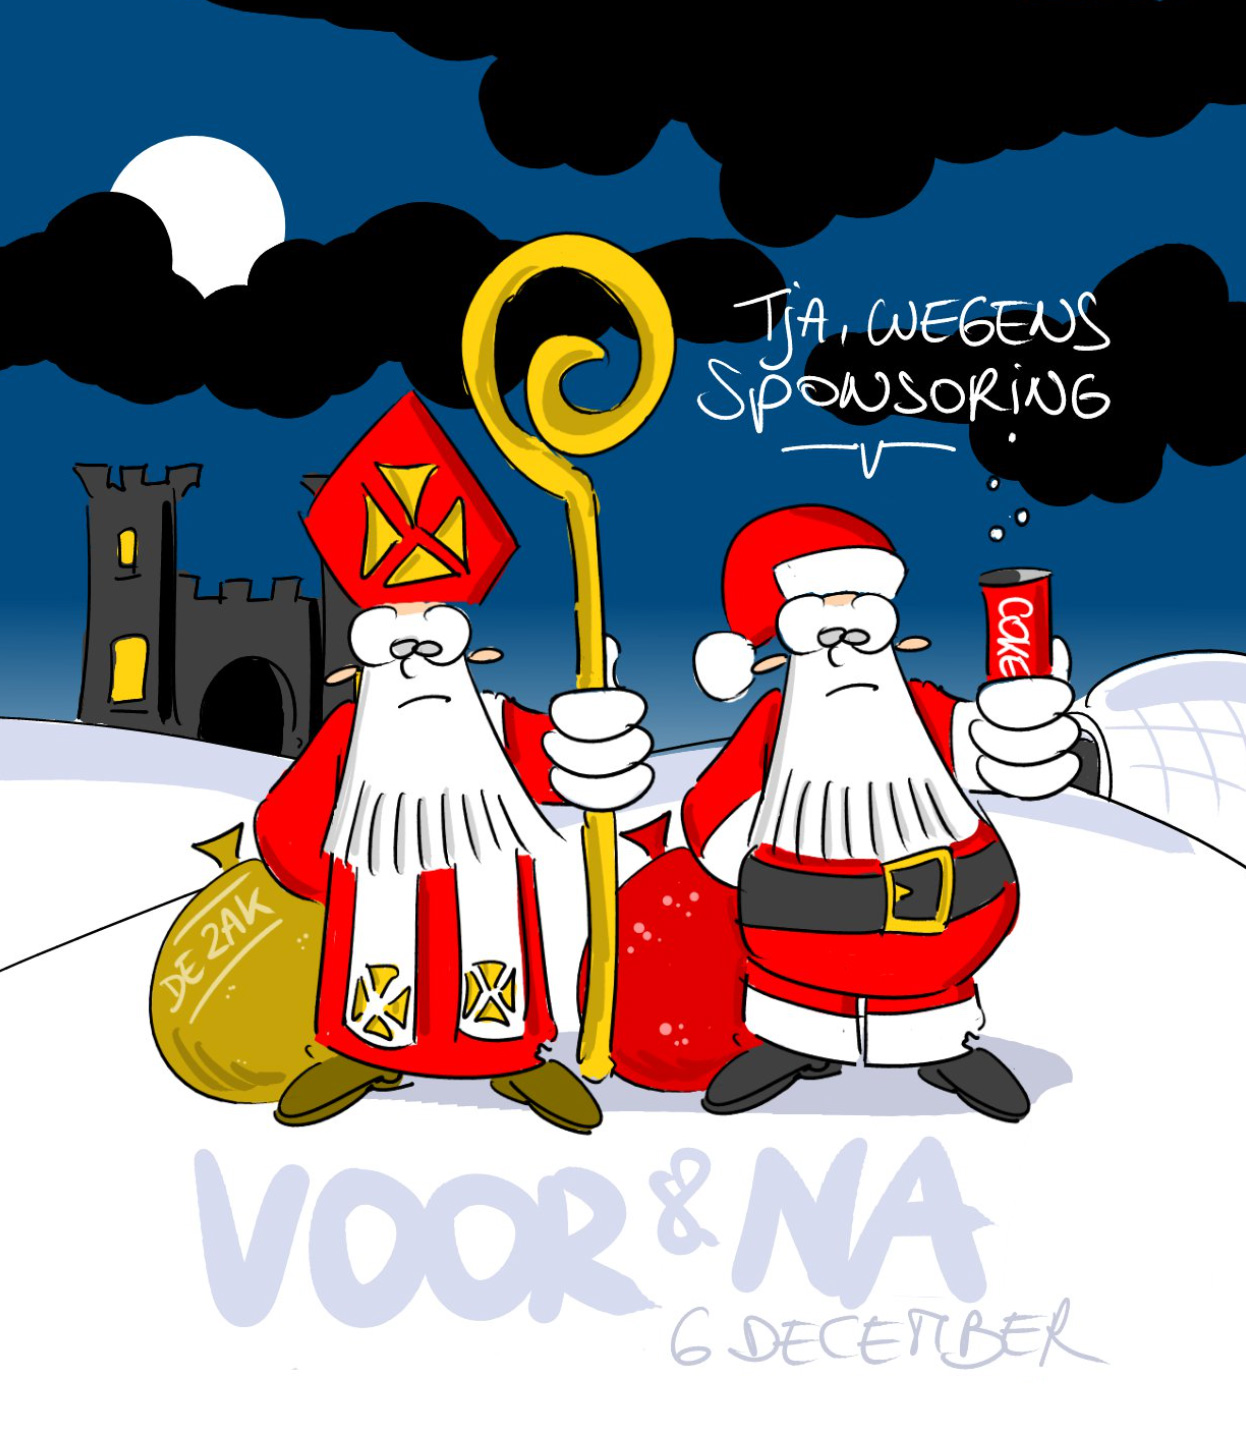 Sinterklaas Vs Kerstman: 12X Meer Gezocht In Google | Up-To-Date Webdesign